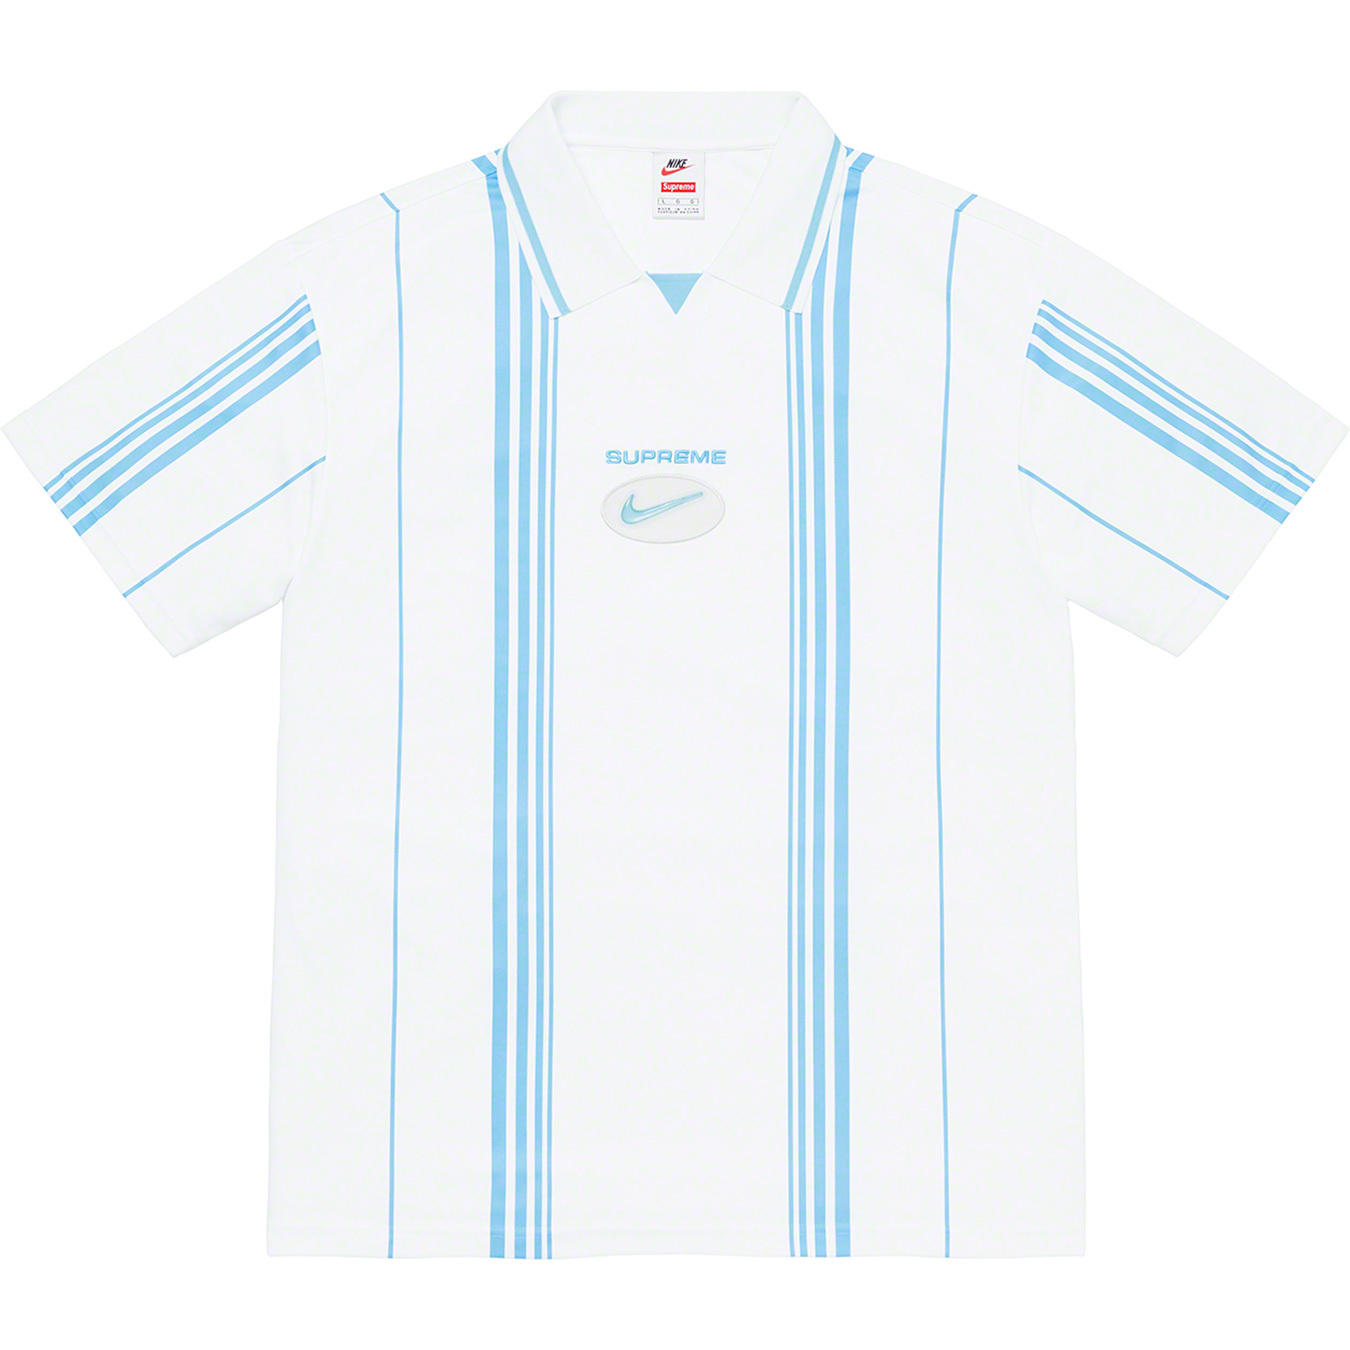 Supreme®/Nike® Jewel Stripe Soccer Jersey